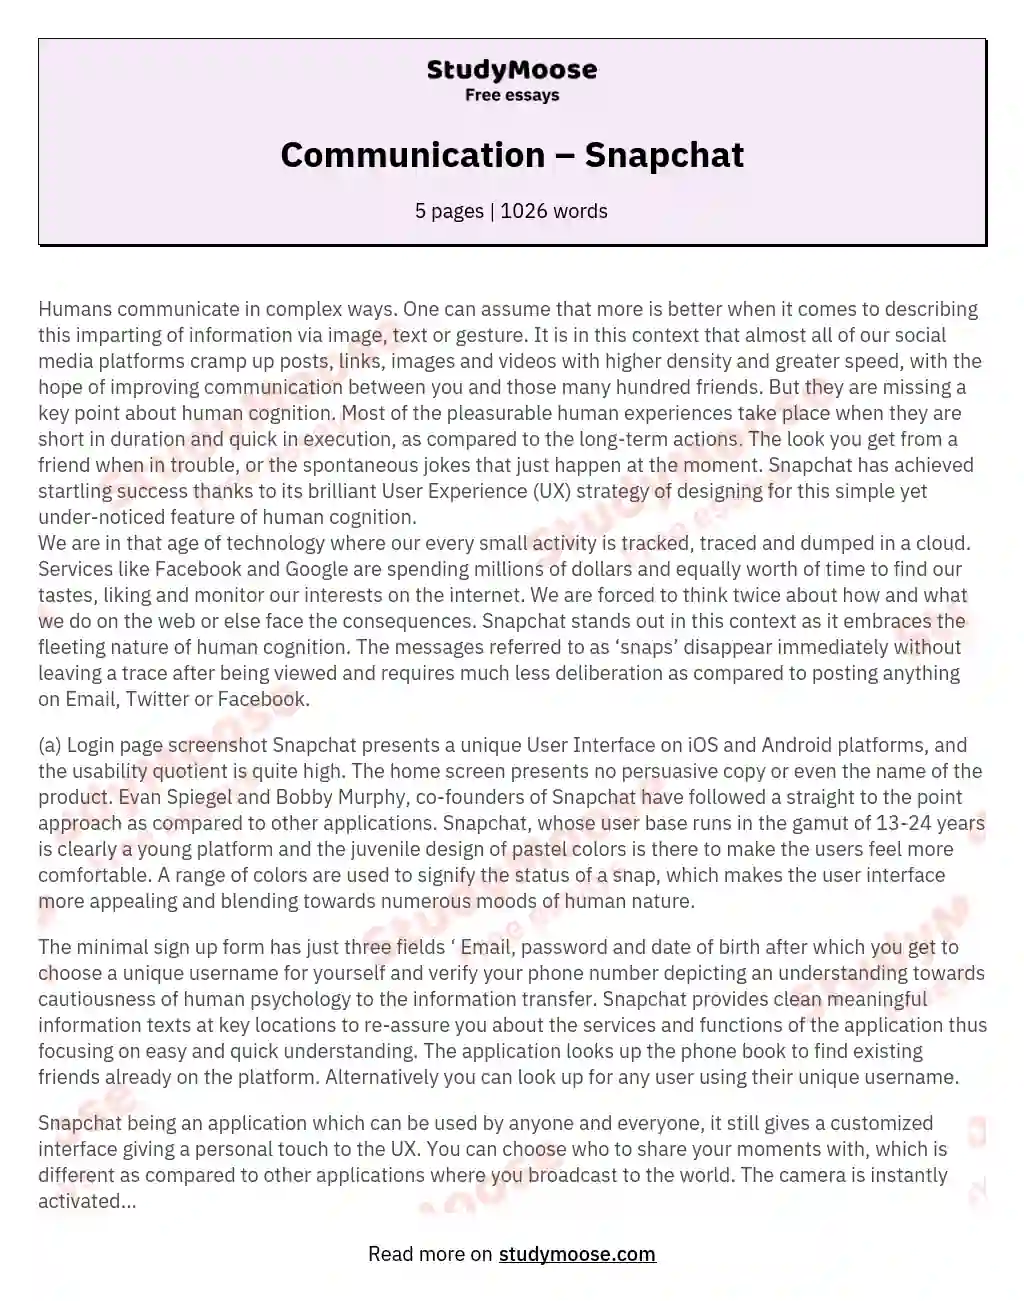 Communication – Snapchat essay